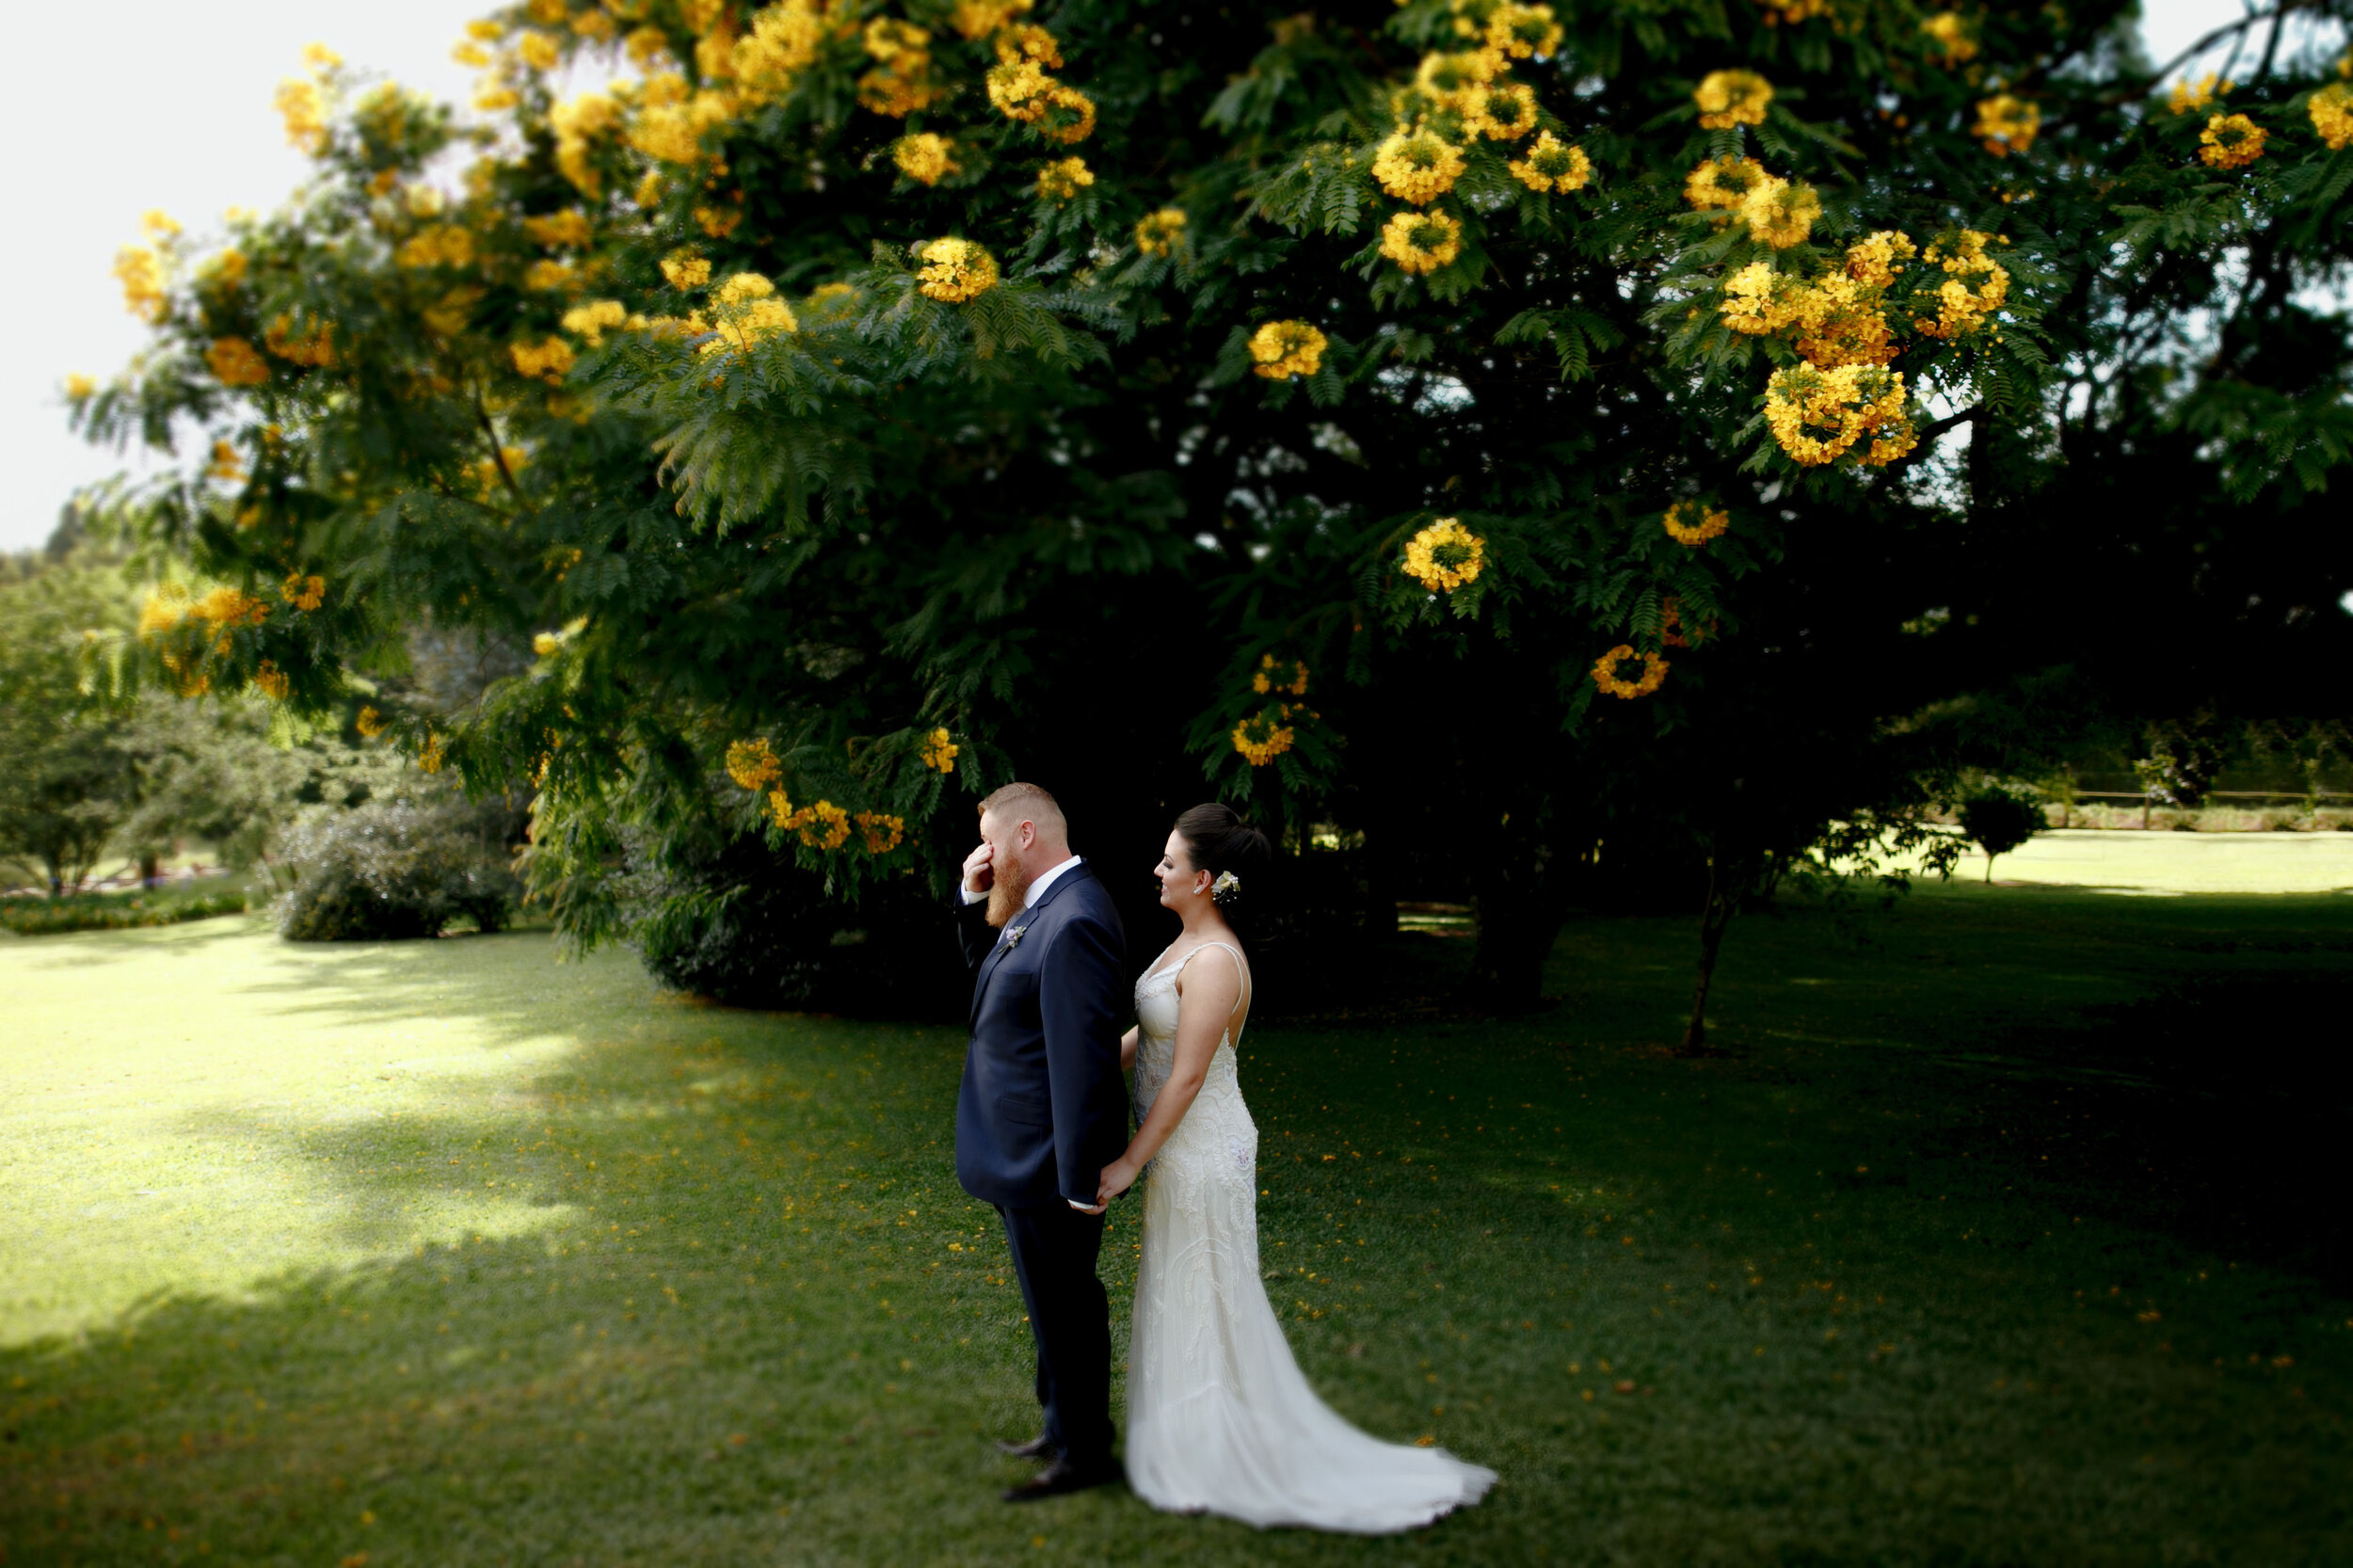 Cheng NV fotografo de casamento em Curitiba- Melhor fotografia do brasil - MIni casamento - Inspiração de decoração - 2020 - noiva - inesquecivel casamento_.10.jpg